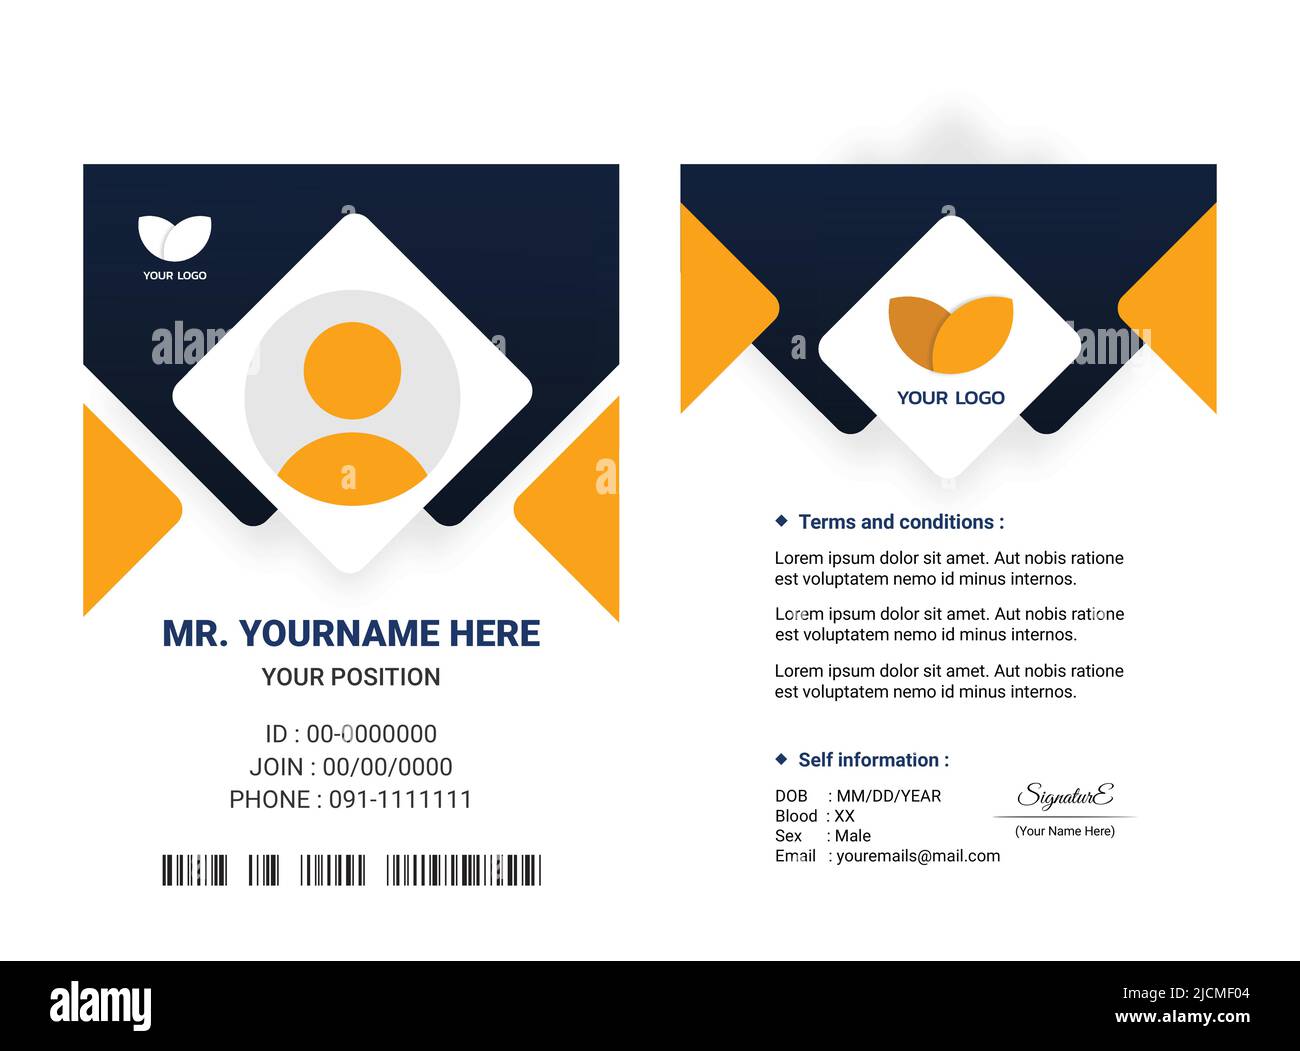 Diseño de plantilla de identificación de tarjeta de negocios. Azul oscuro y amarillo Tarjeta de visita vertical o identidad personal. Ilustración vectorial Ilustración del Vector